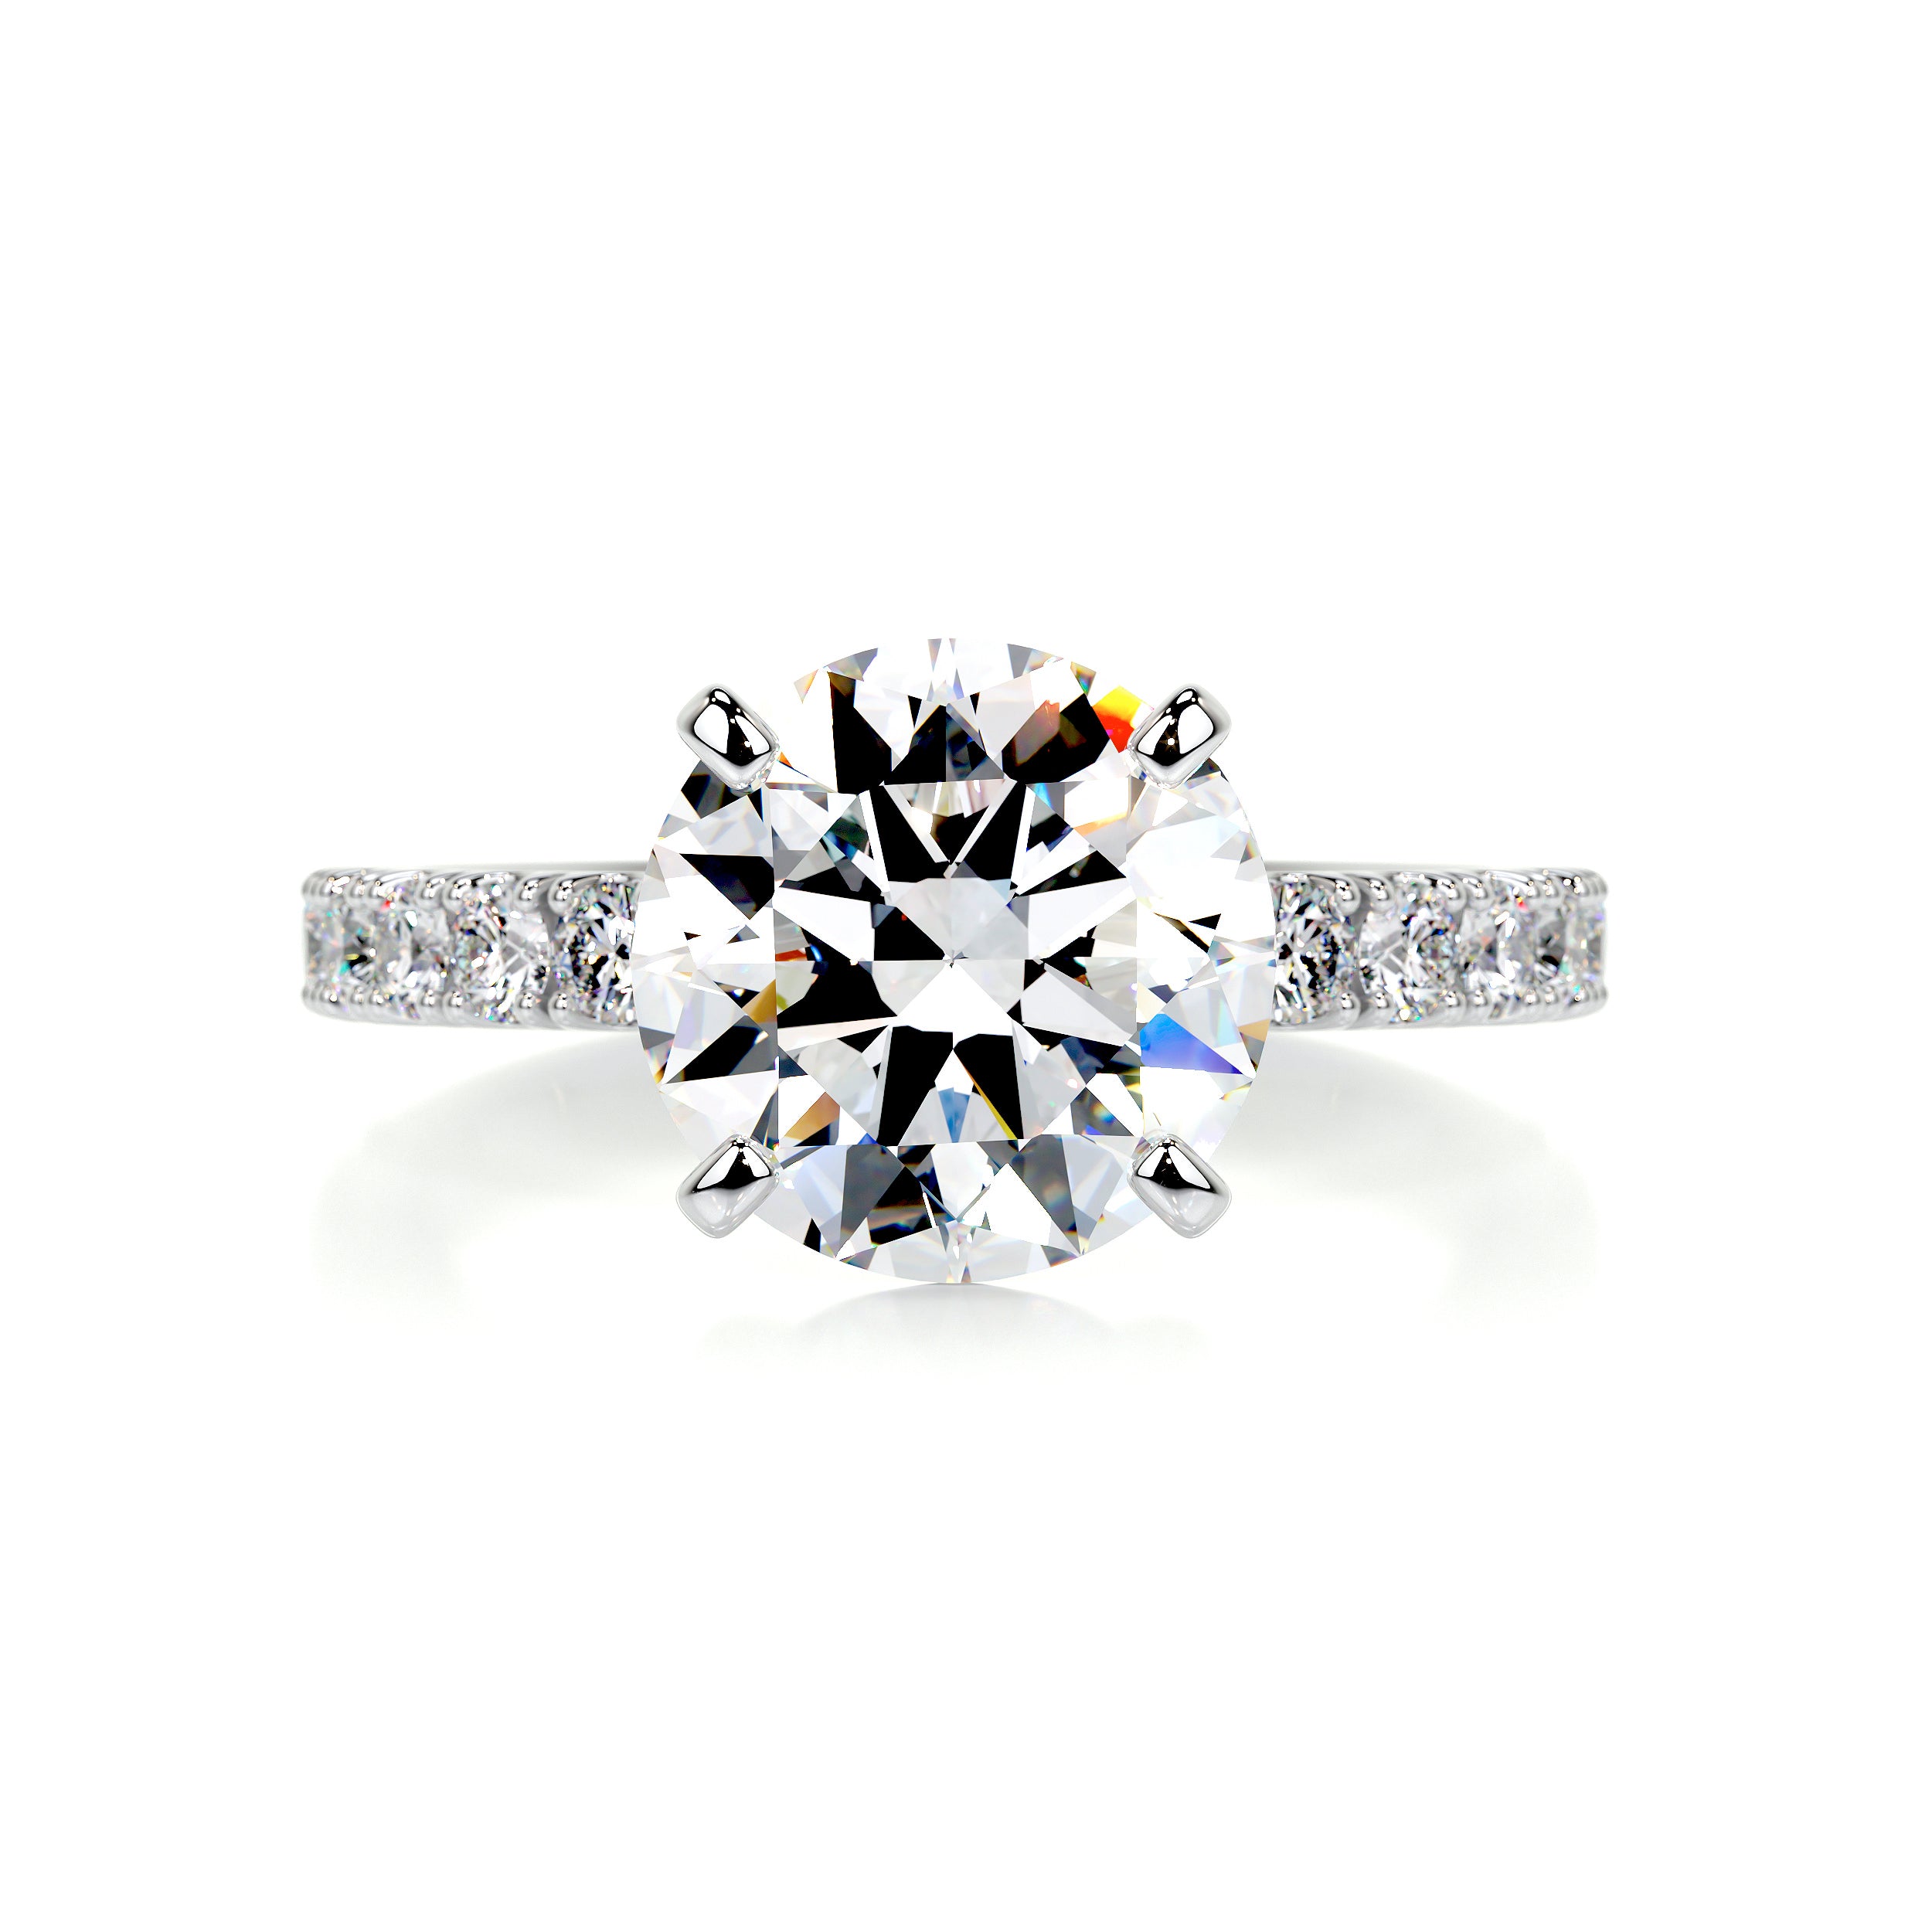 Alison Moissanite & Diamonds Ring -Platinum